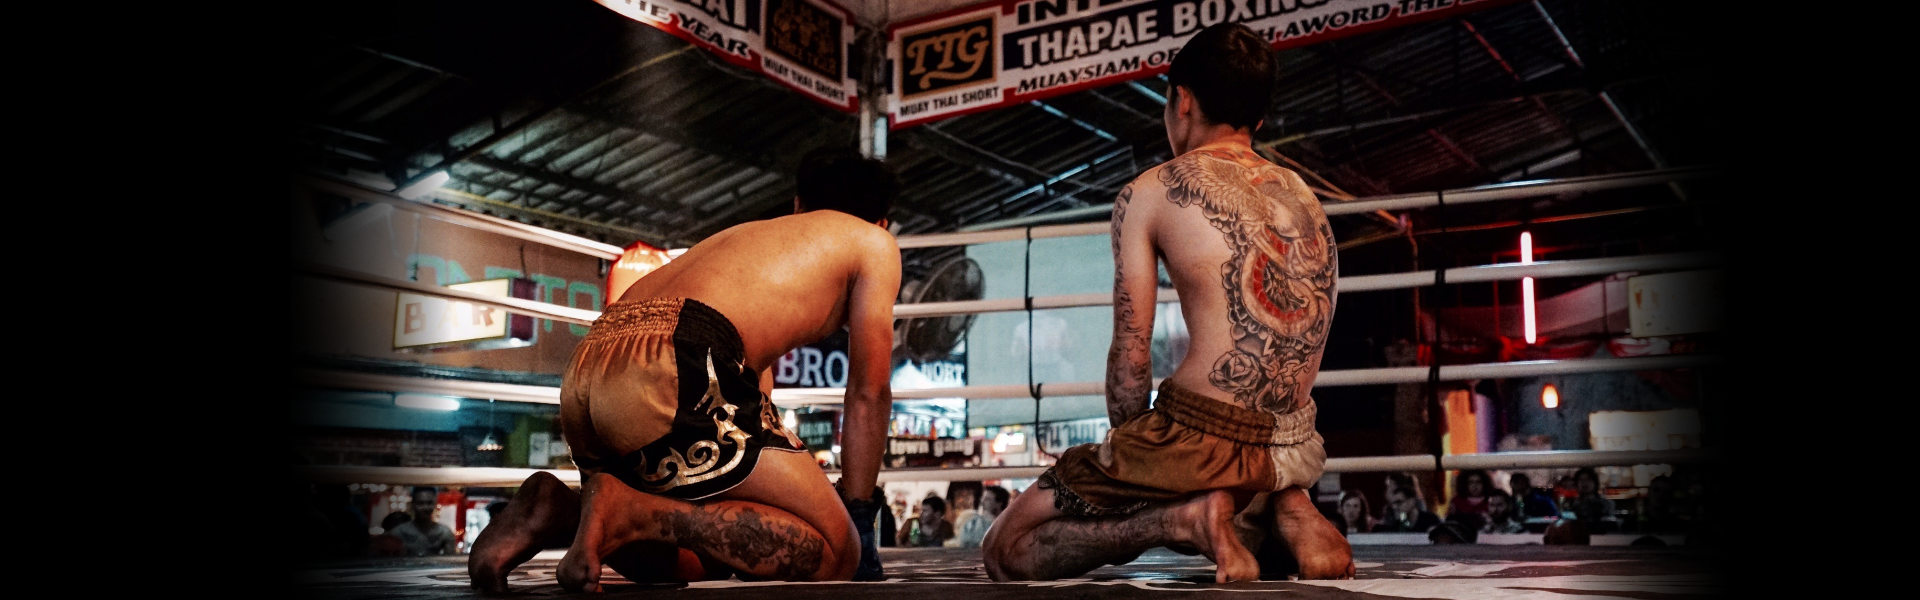 Thaiboxer tätowiert im Ring